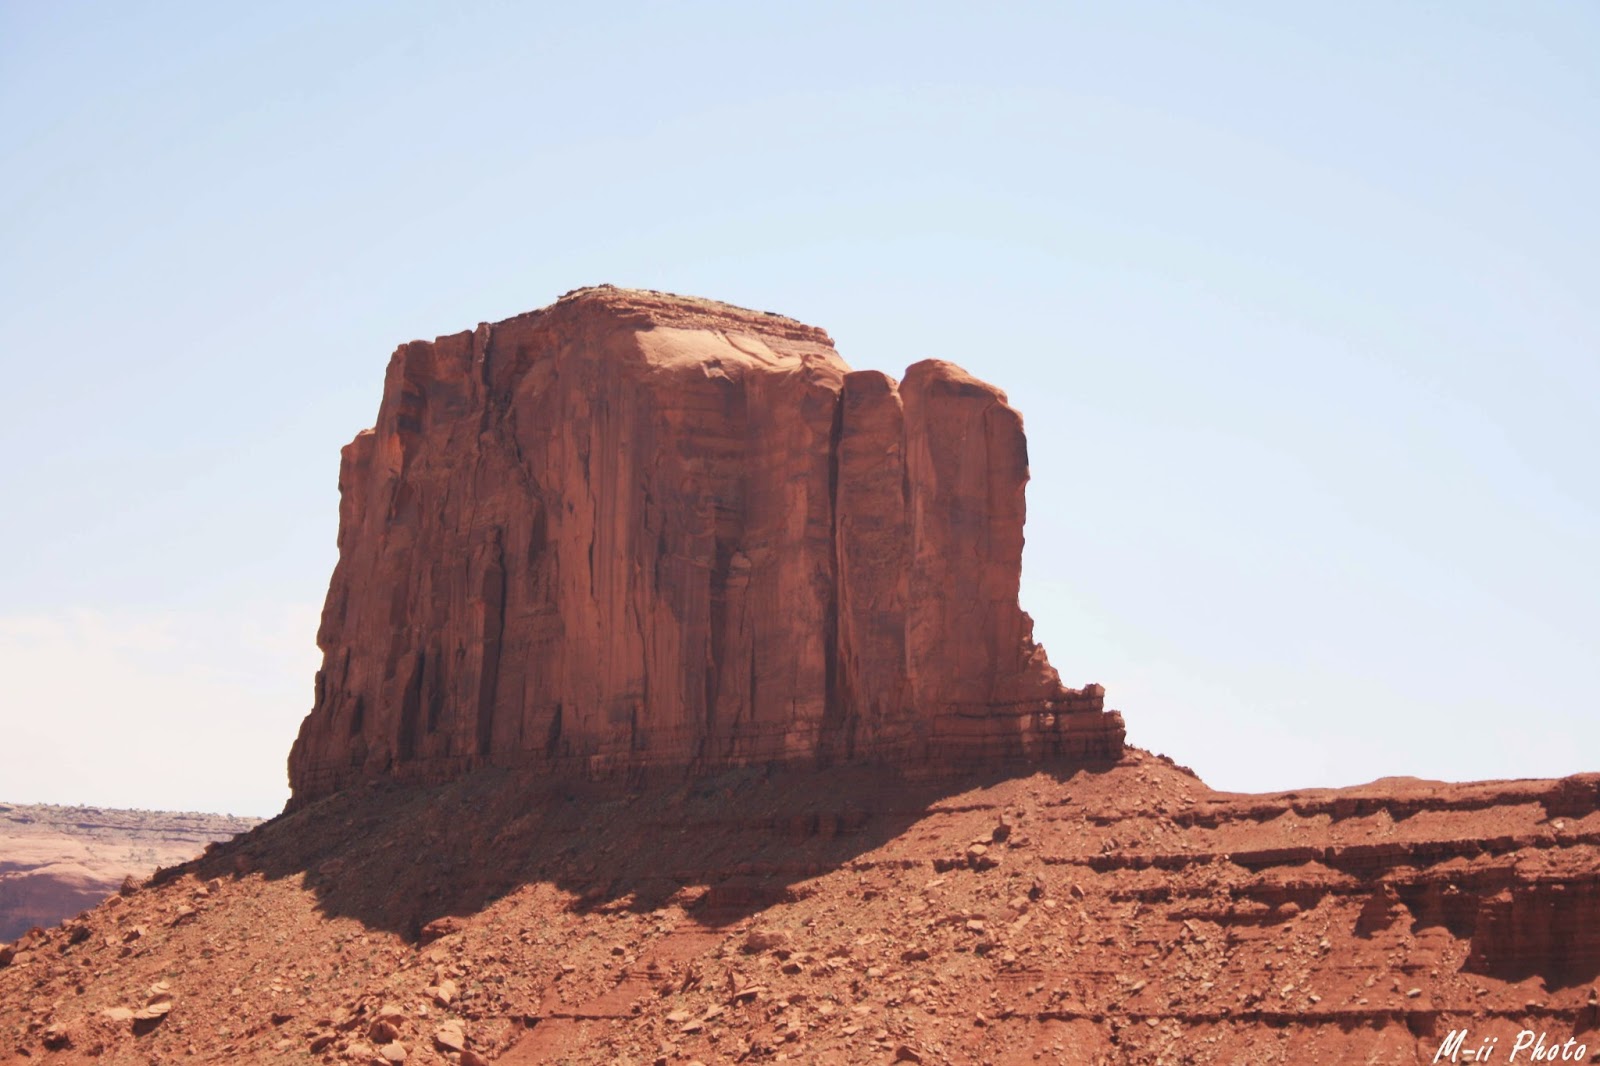 M-ii Photo: Monument Valley la roche de l'éléphant